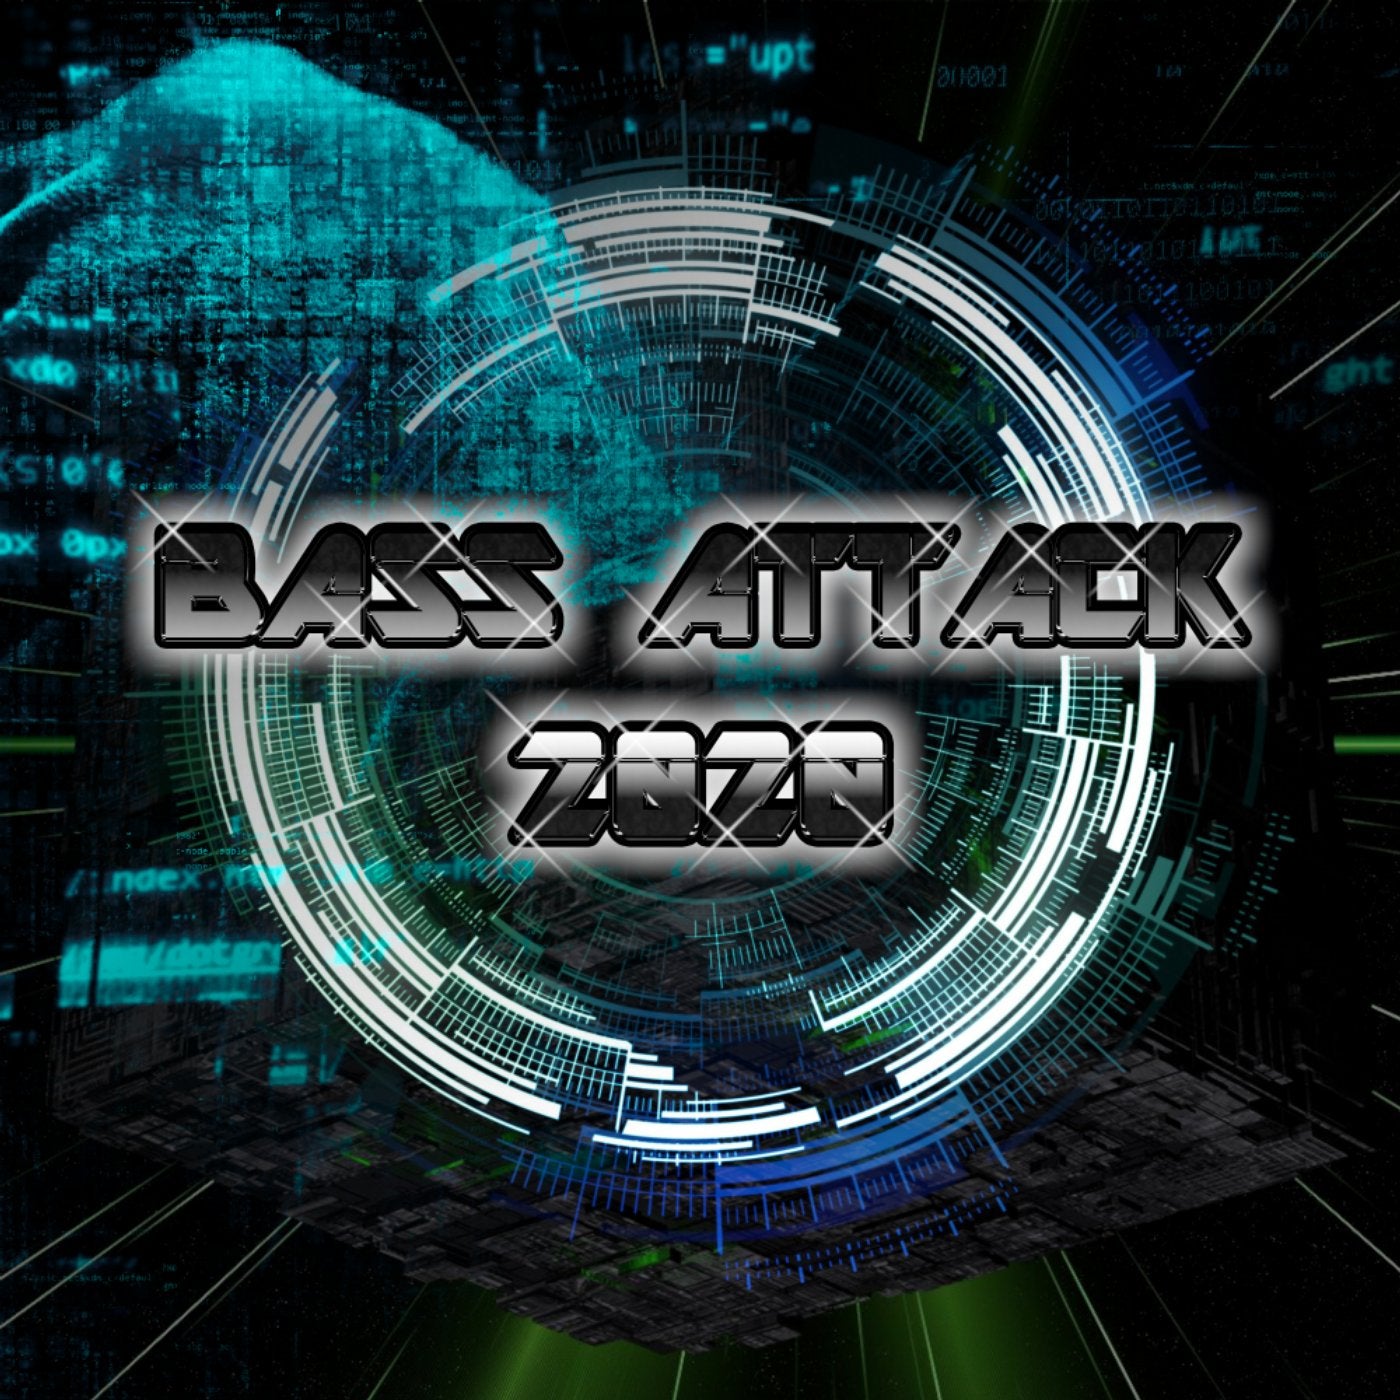 Bass Attack. Muzika Bass Remix. Digital industry. Industrial bass